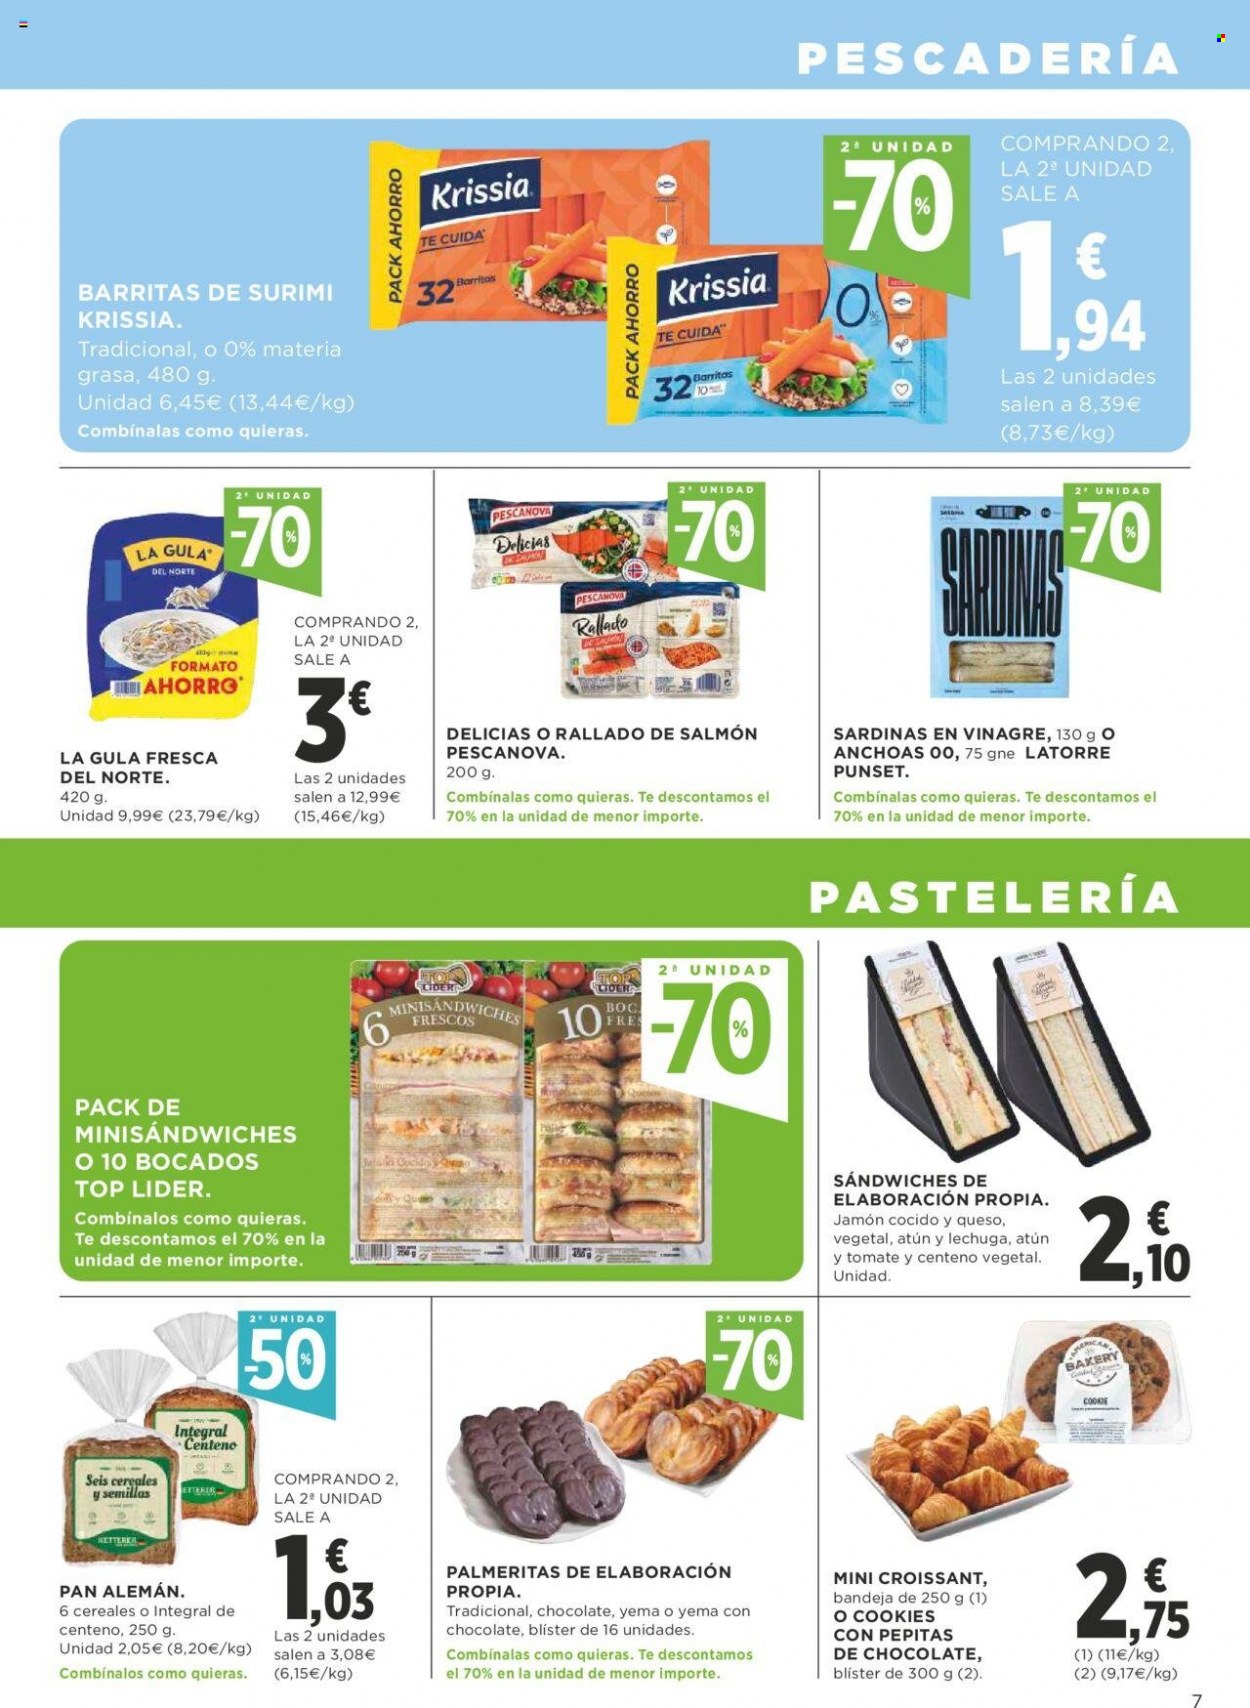 thumbnail - Folleto actual Supercor supermercados - 30/06/22 - 13/07/22 - Ventas - lechuga, pan, croissant, palmerita, atún, anchoa, surimi, sardinas, salmón, jamón, jamón cocido, cookies, La Gula del Norte. Página 7.